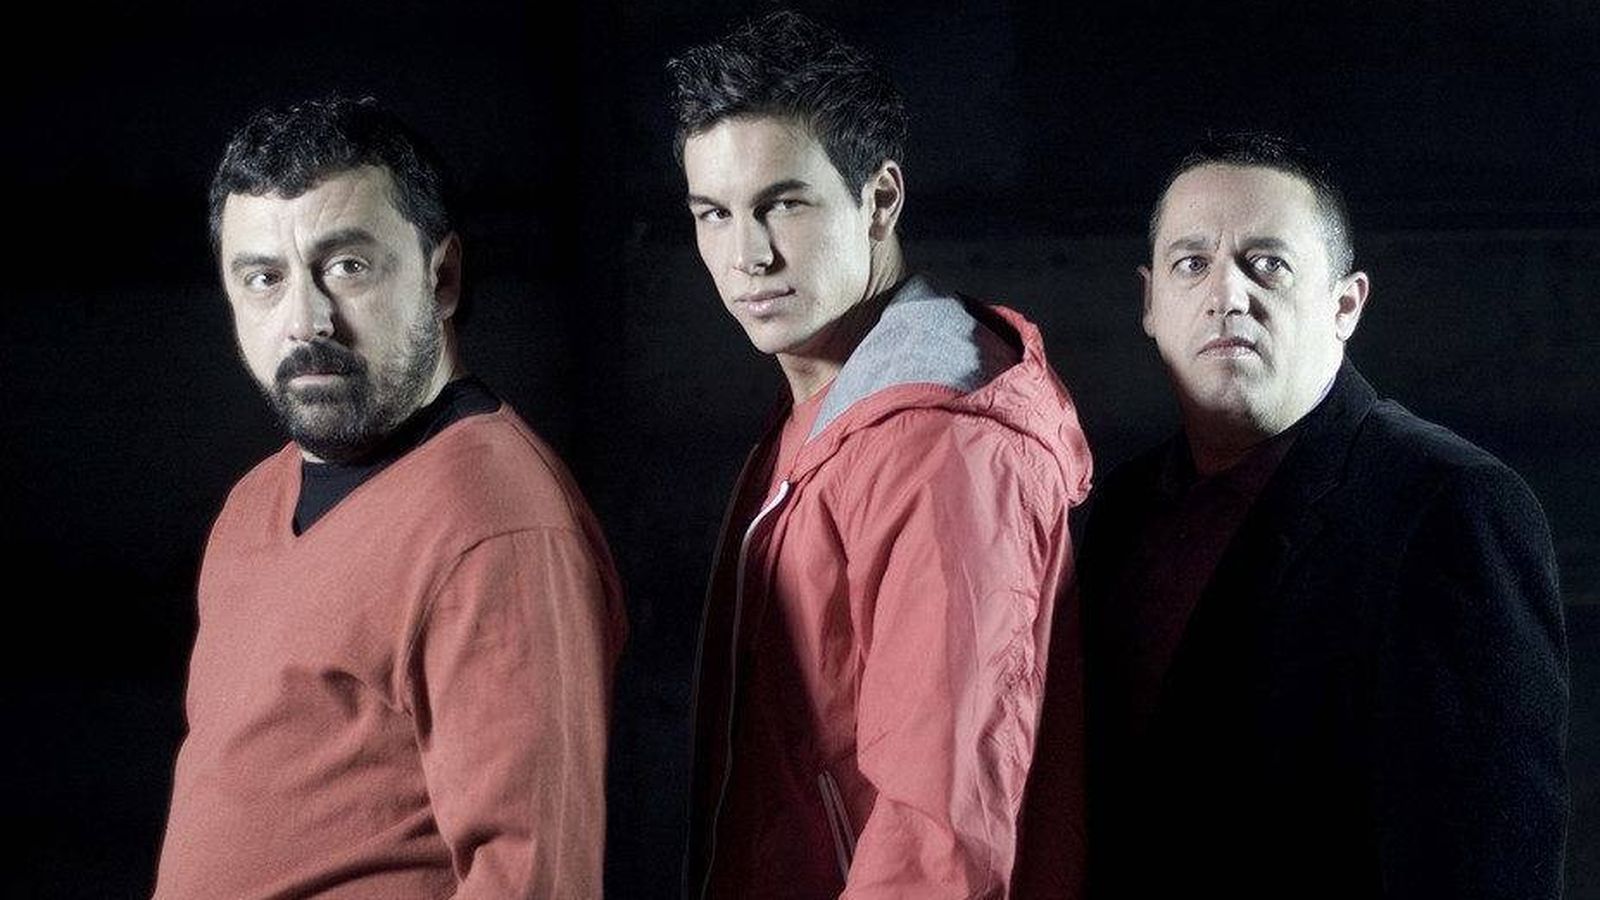 Foto: De izquierda a derecha: Paco Tous, Mario Casas y Pepón Nieto, protagonistas de 'Los hombres de Paco'